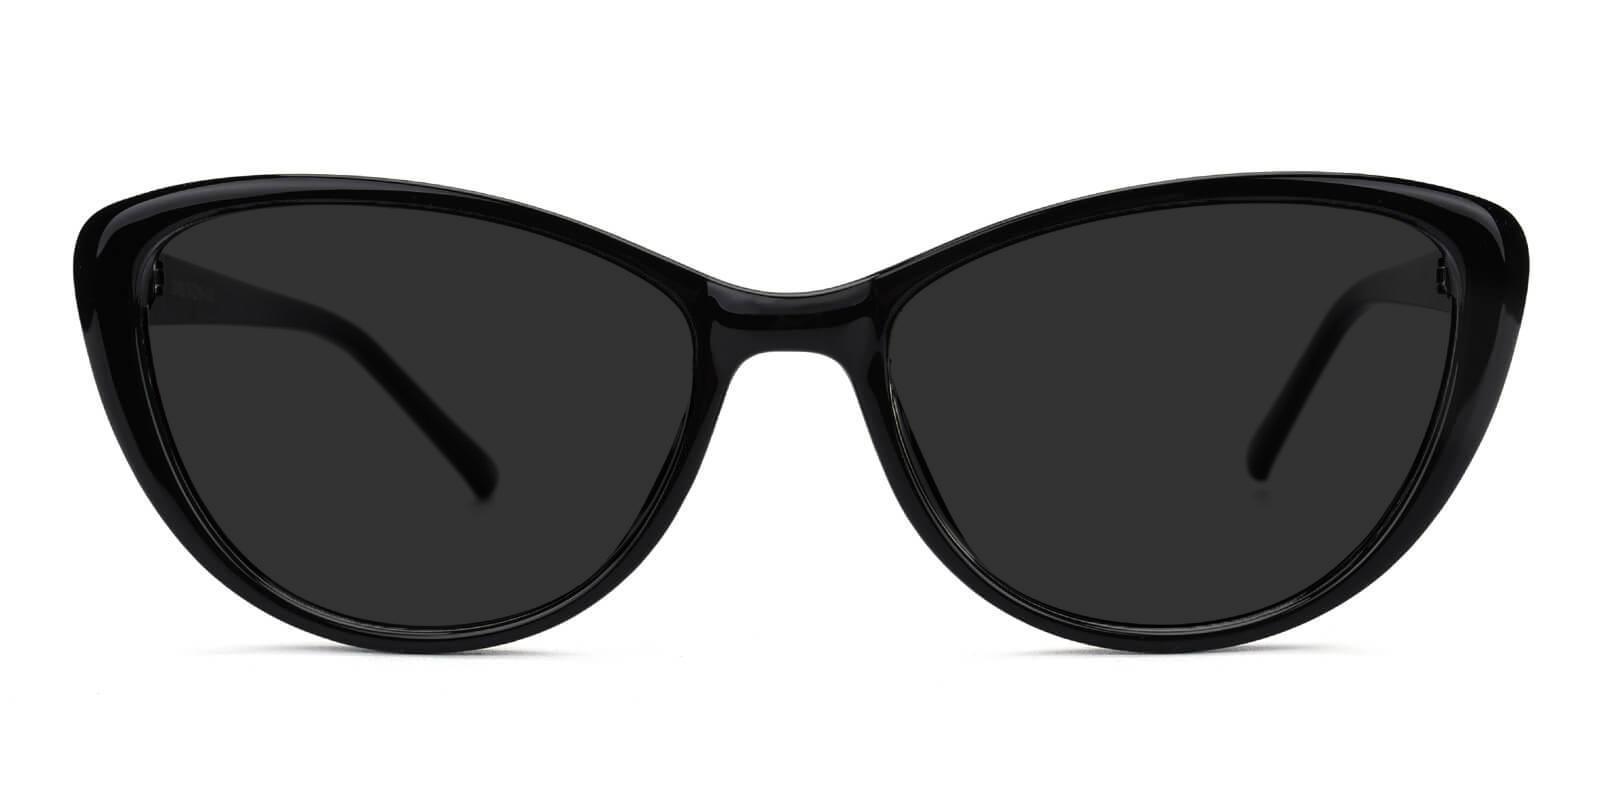 Morla Black Plastic Sunglasses , UniversalBridgeFit Frames from ABBE Glasses